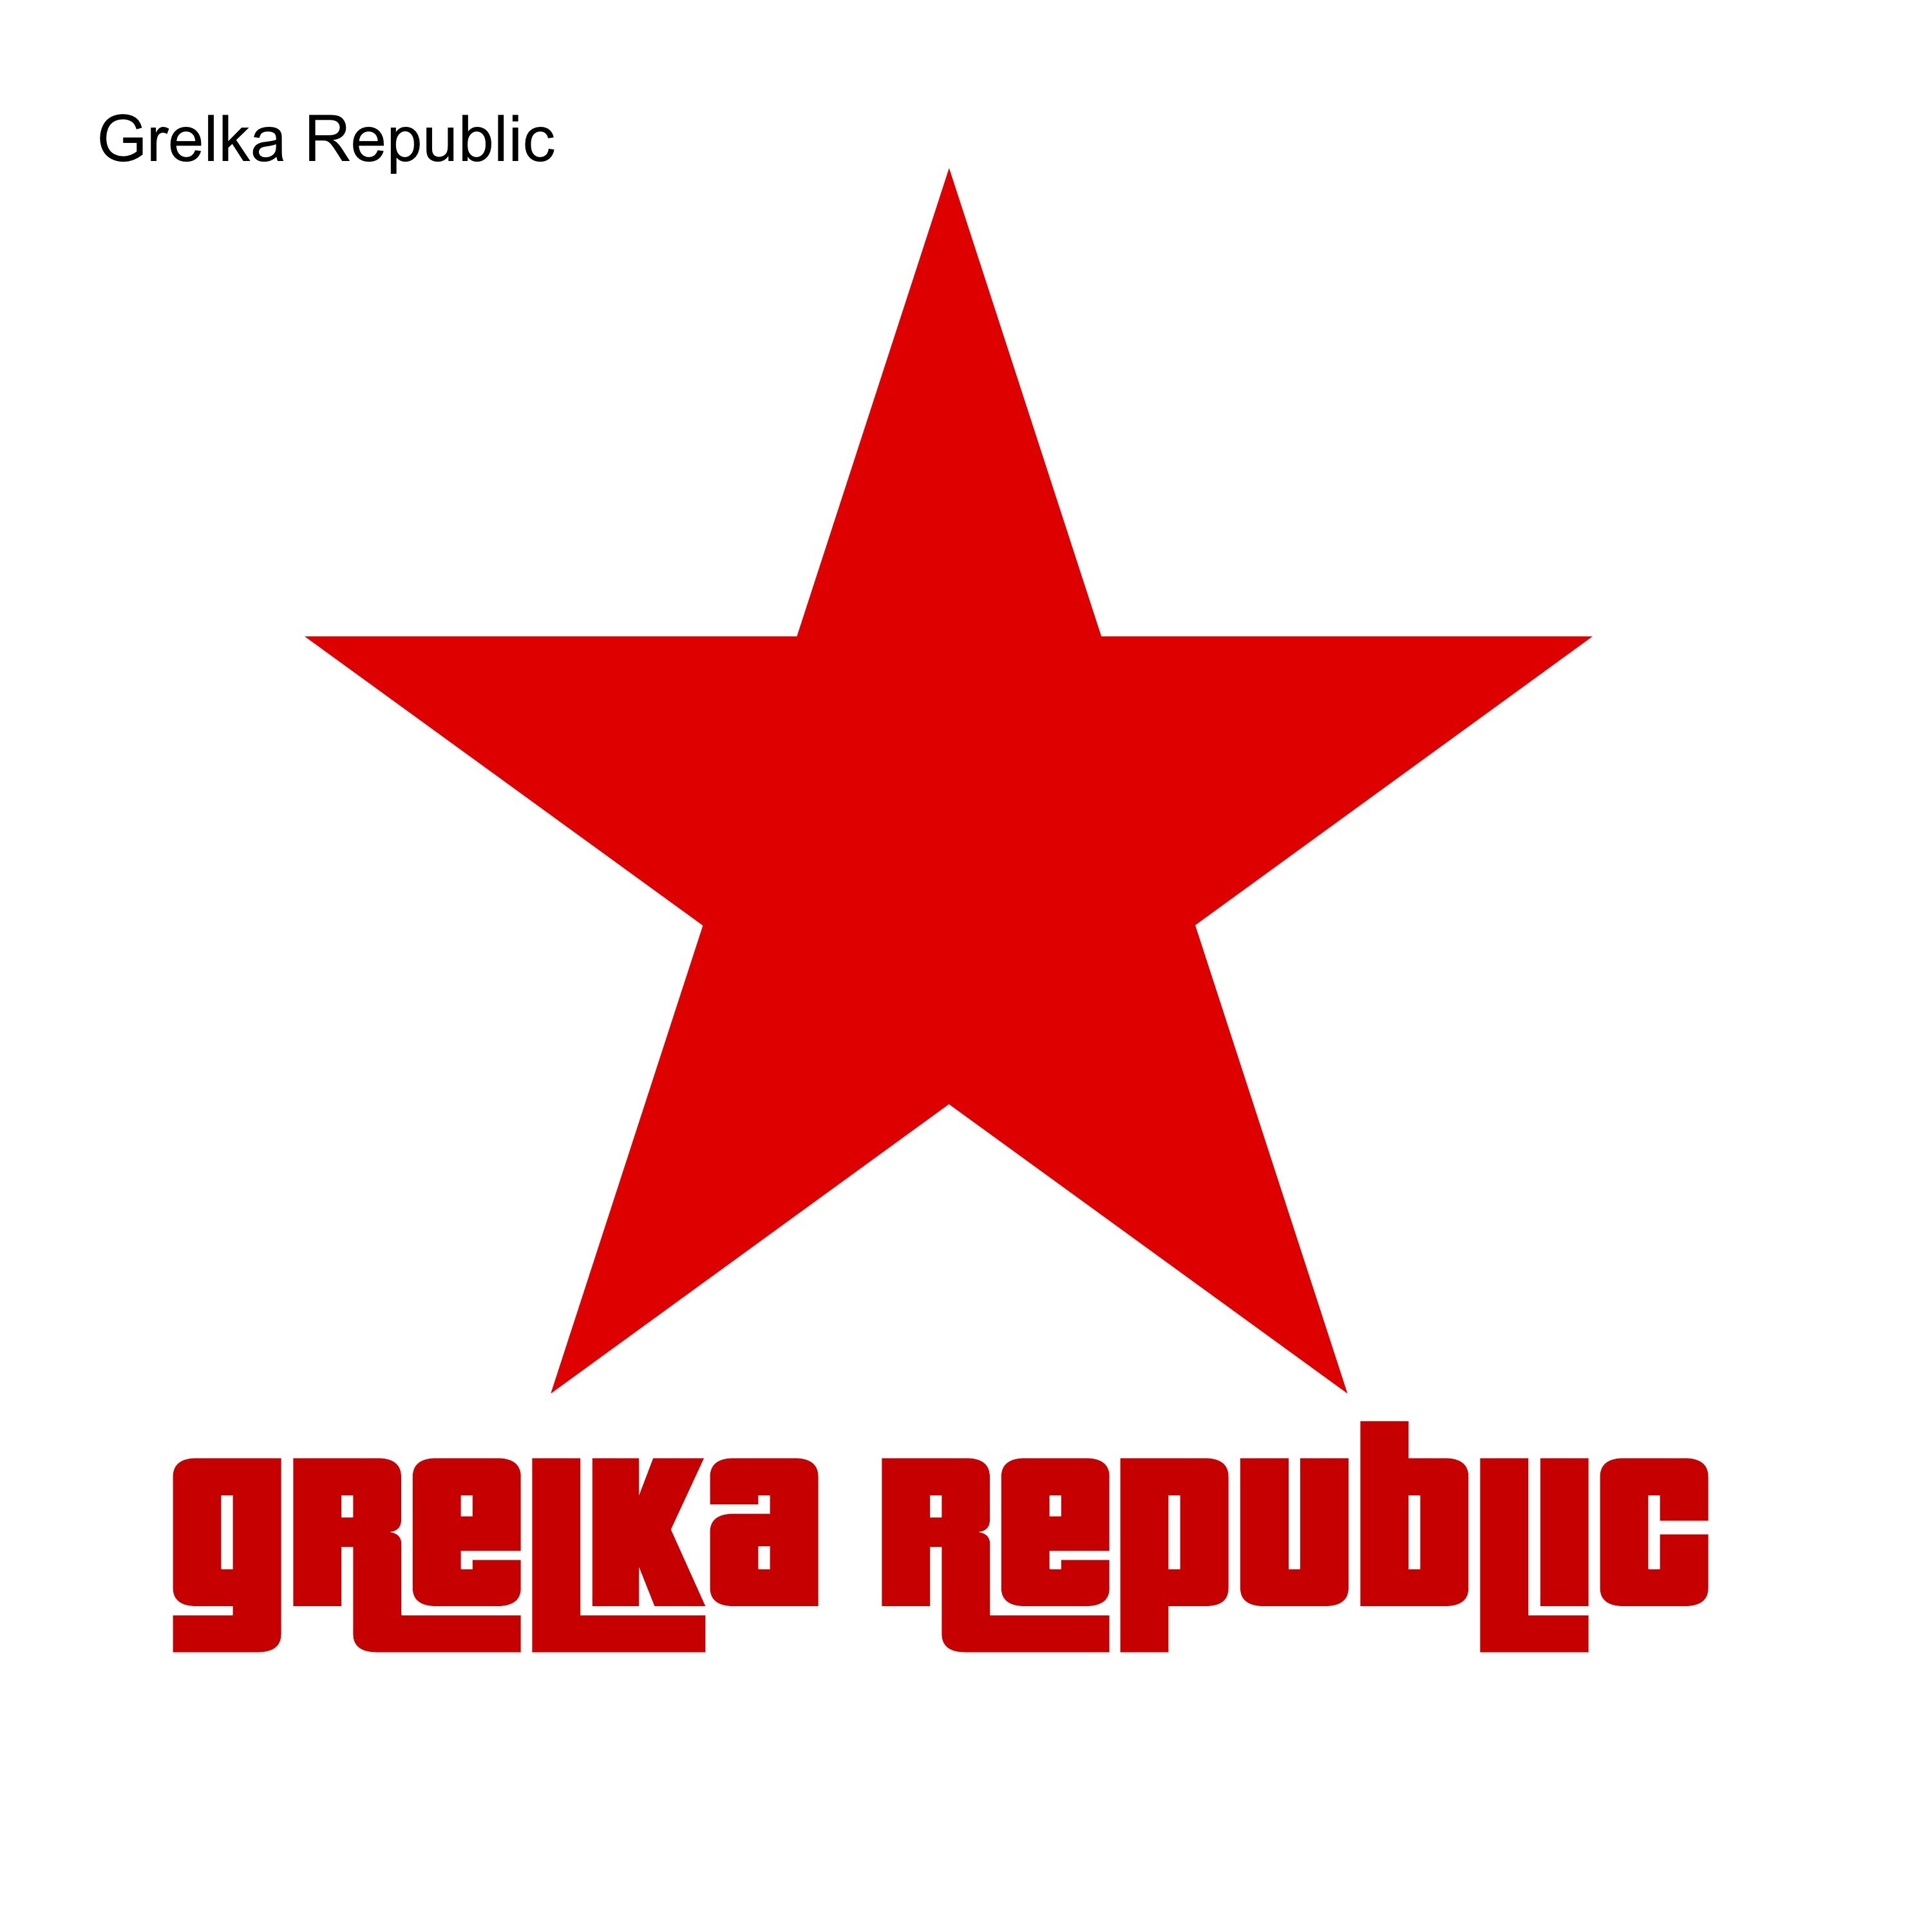 UFC - Grelka Republic